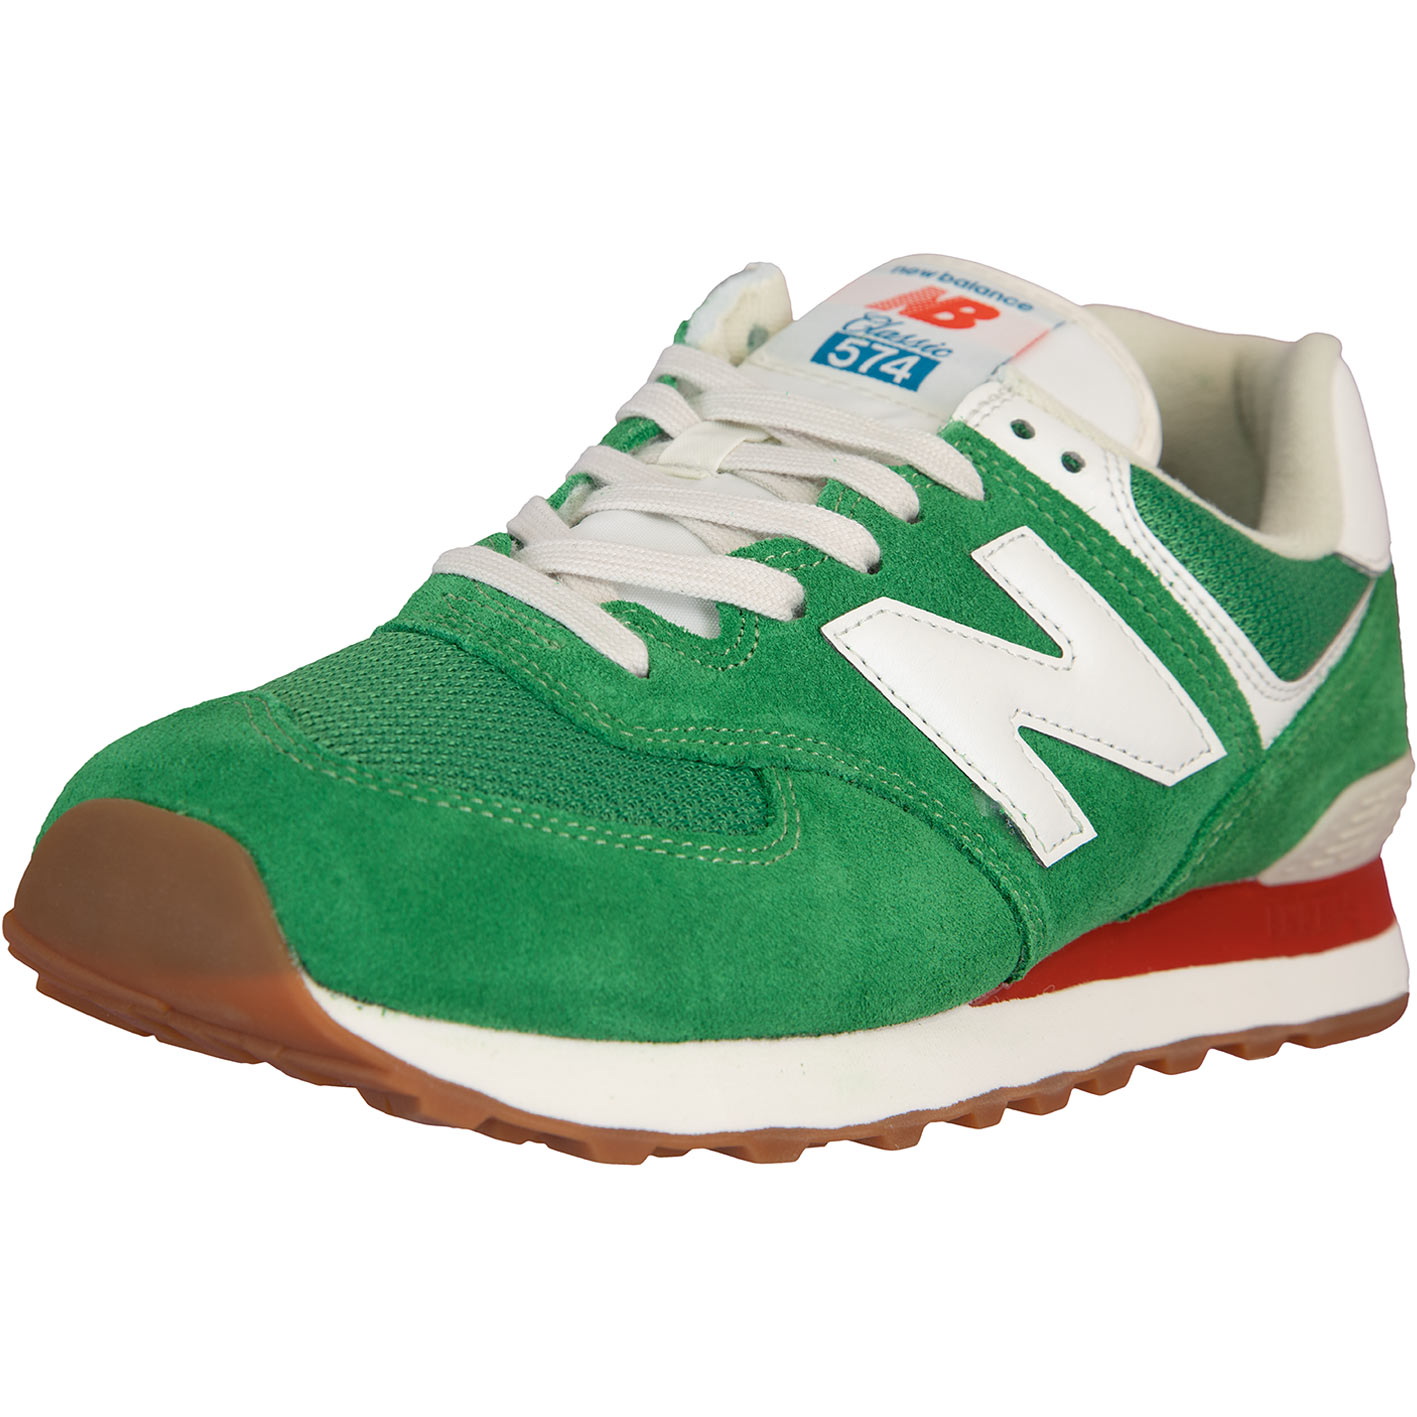 ☆ New Balance NB 574 Sneaker Schuhe grün - hier bestellen!